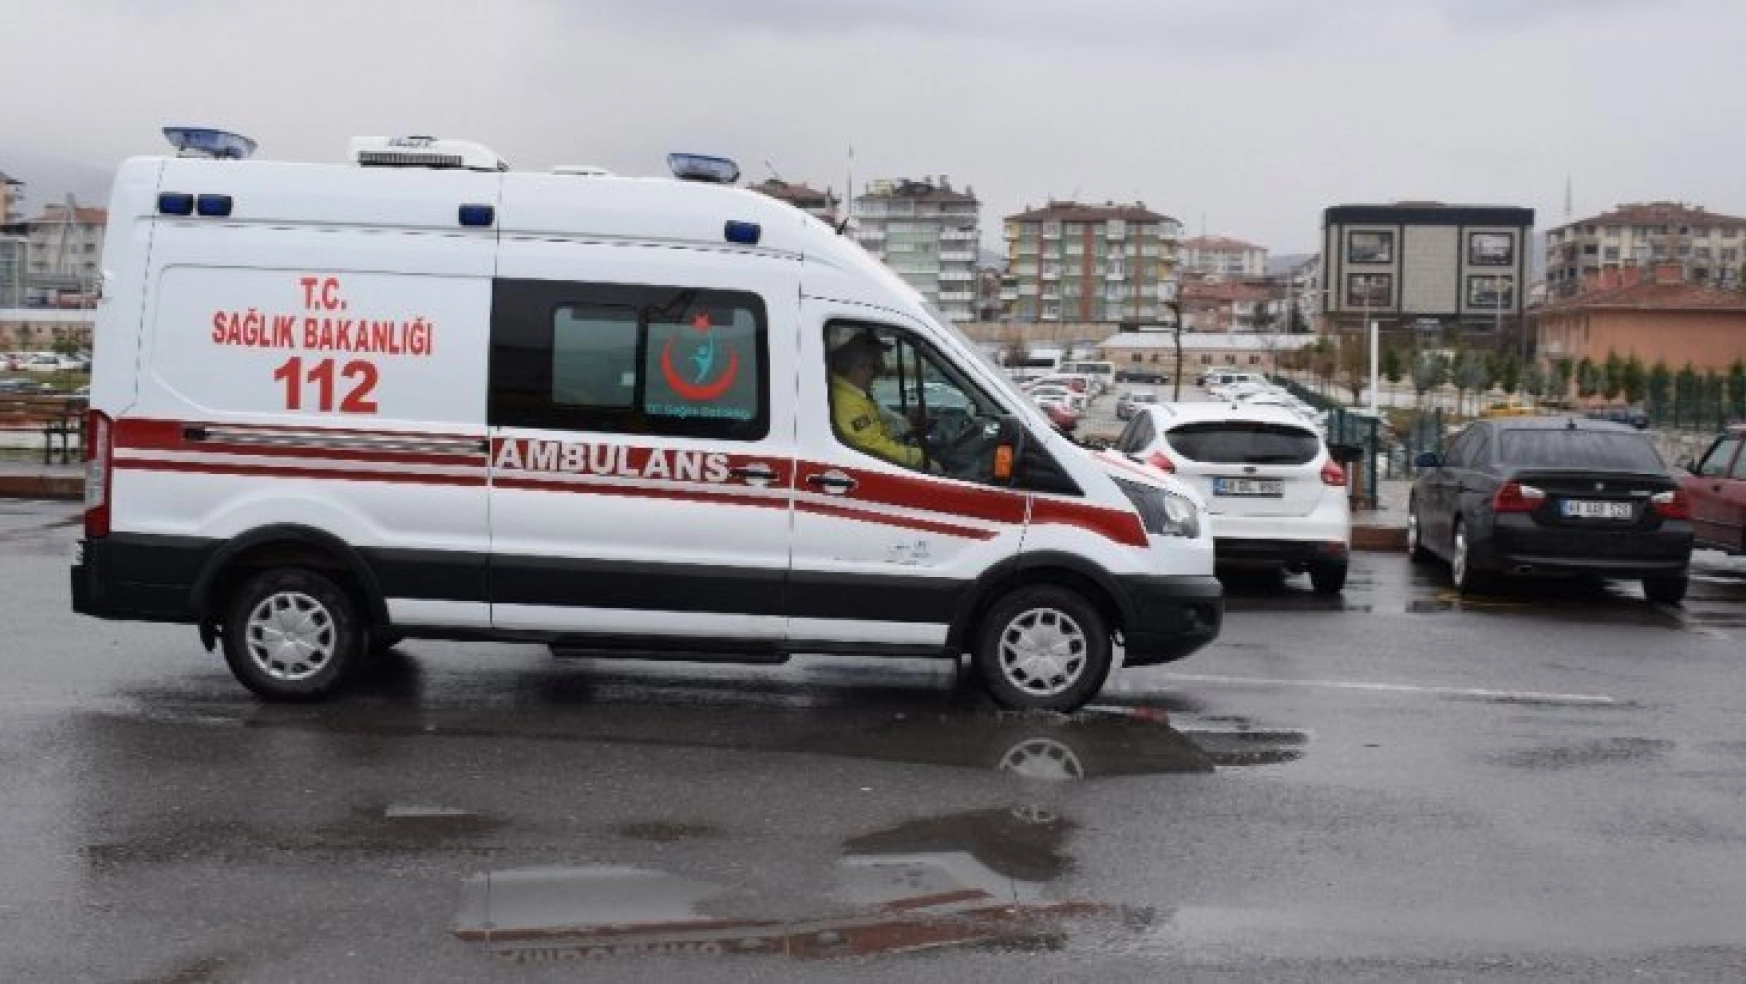 Malatya da feci kaza: 1 ölü, 5 yaralı